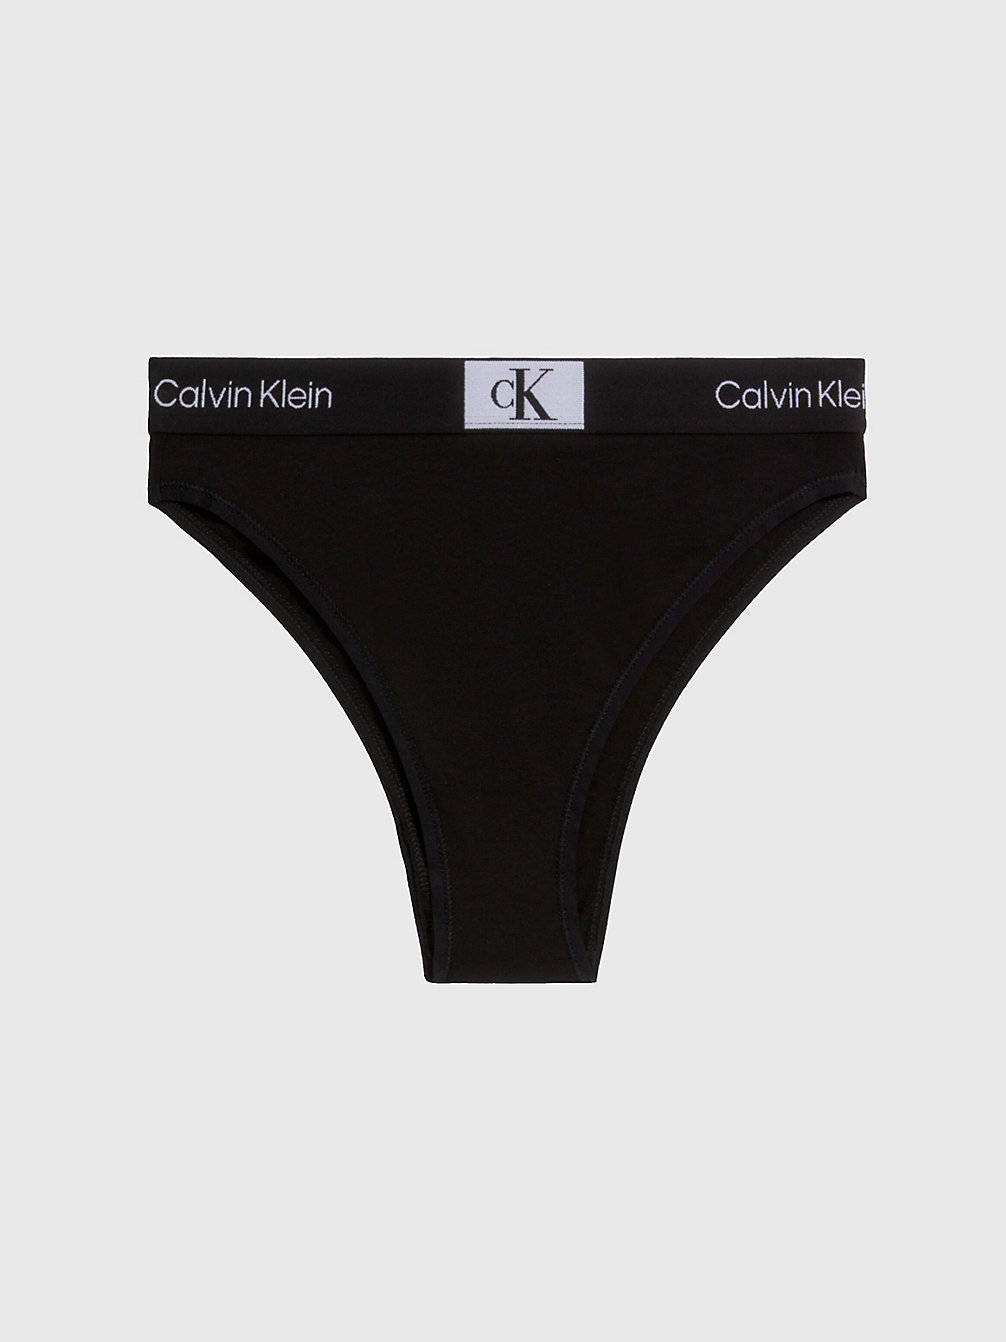 BLACK > Brazilian Slip Mit Hoher Taille - Ck96 > undefined Damen - Calvin Klein